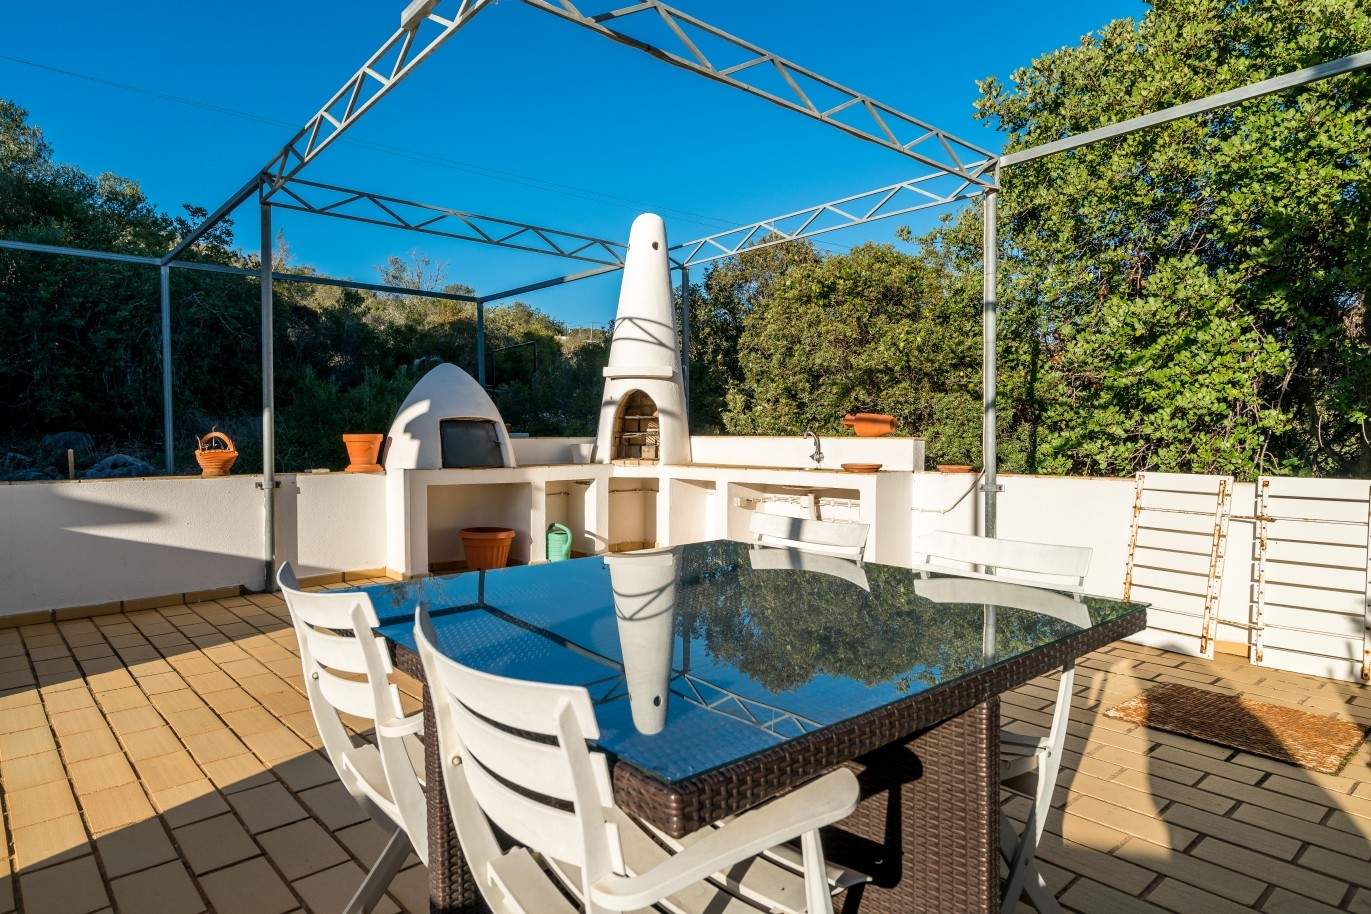 Propriedade à venda, piscina, vista mar, Santa Bárbara Nexe, Algarve_72154